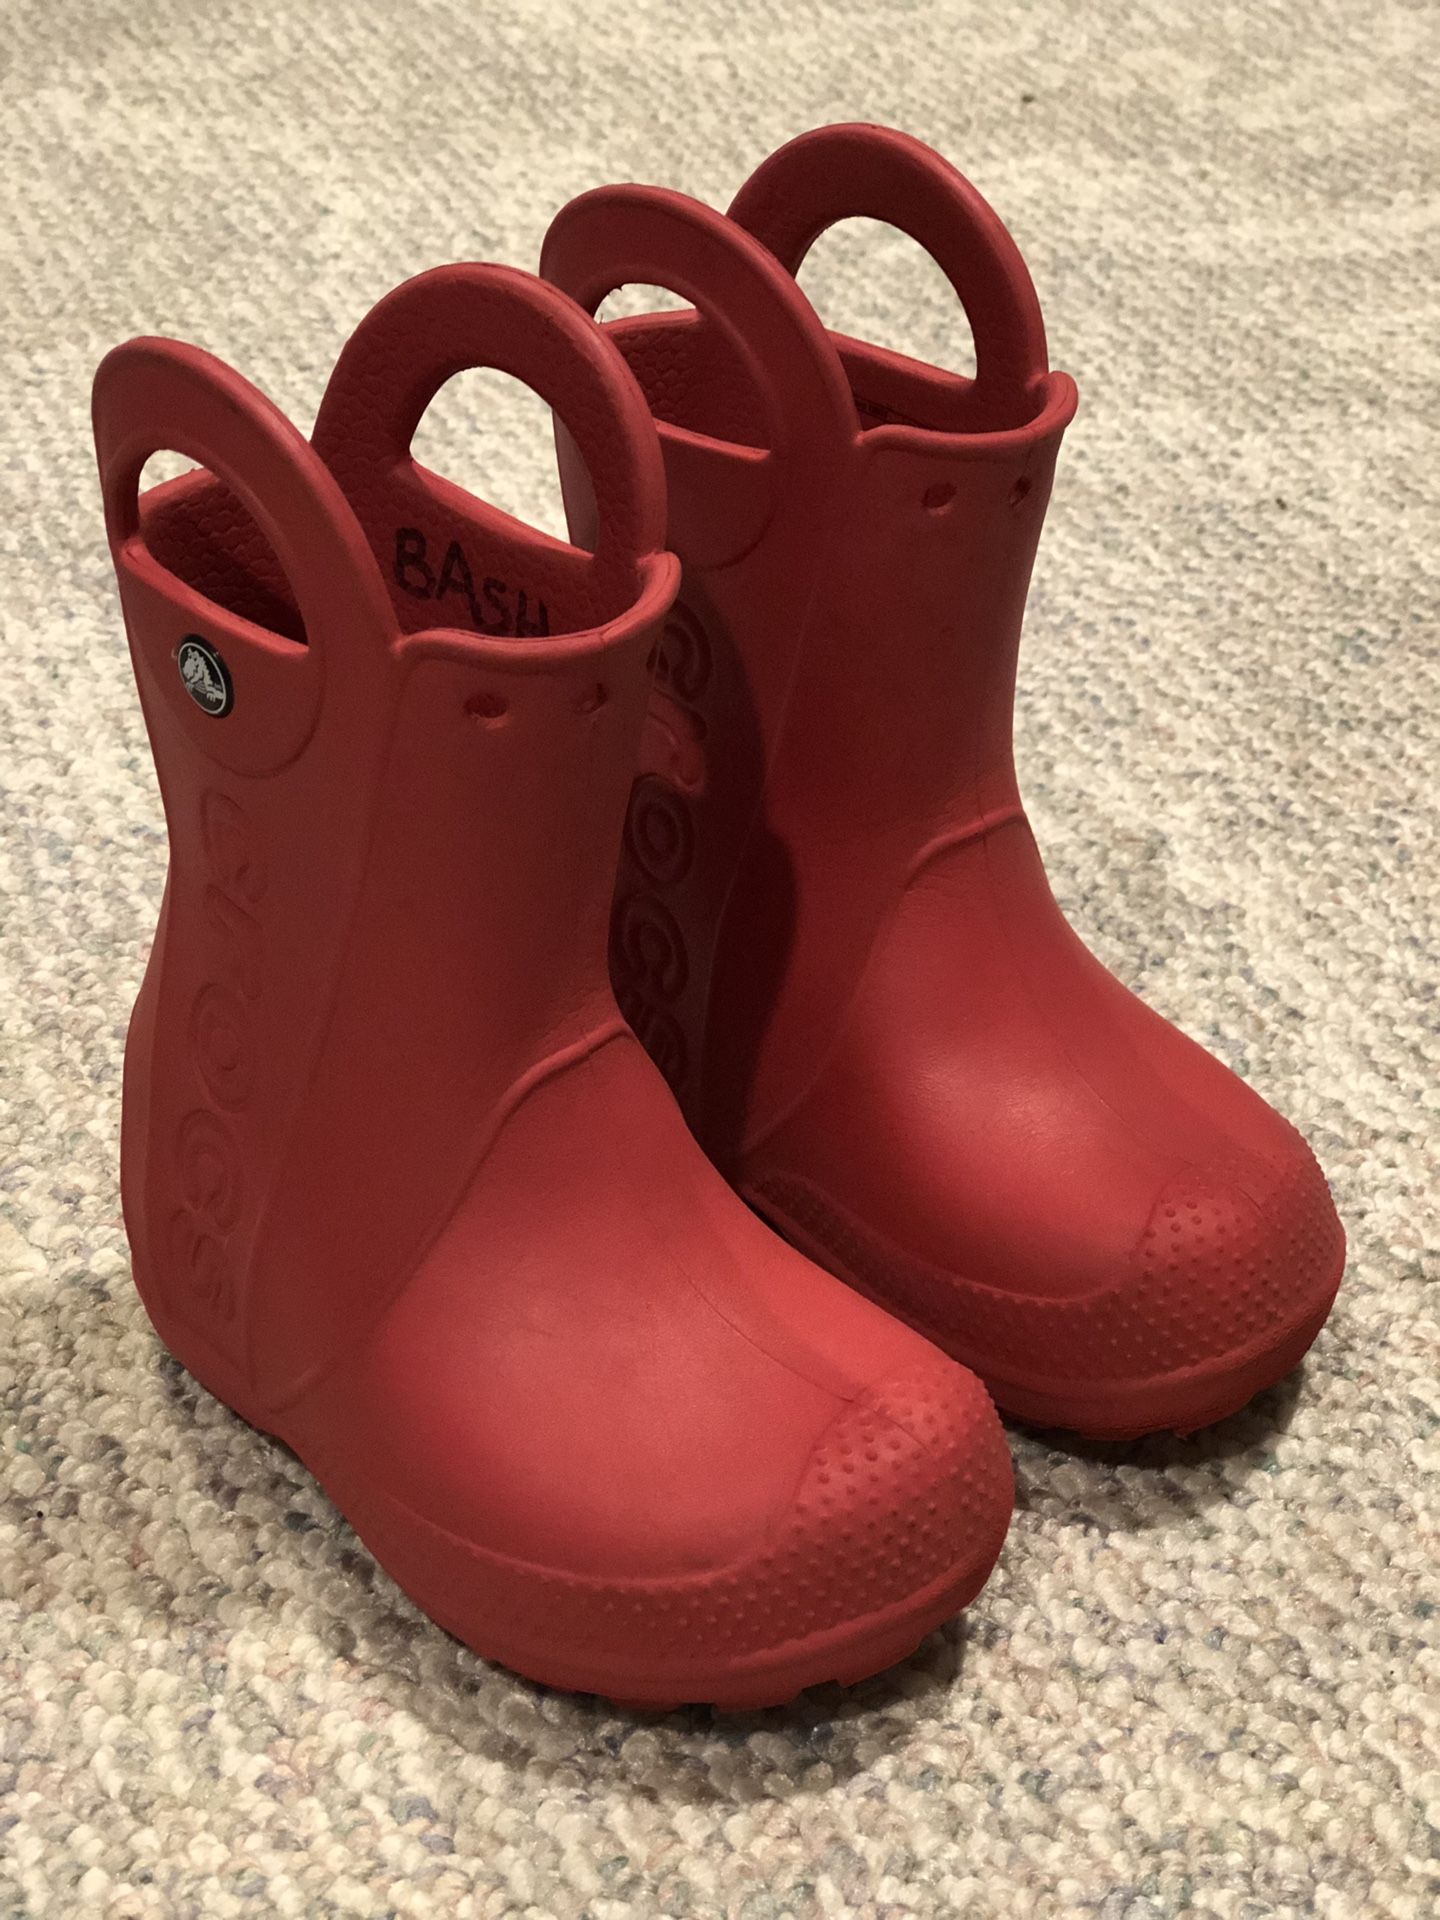 Croc boots size c 8